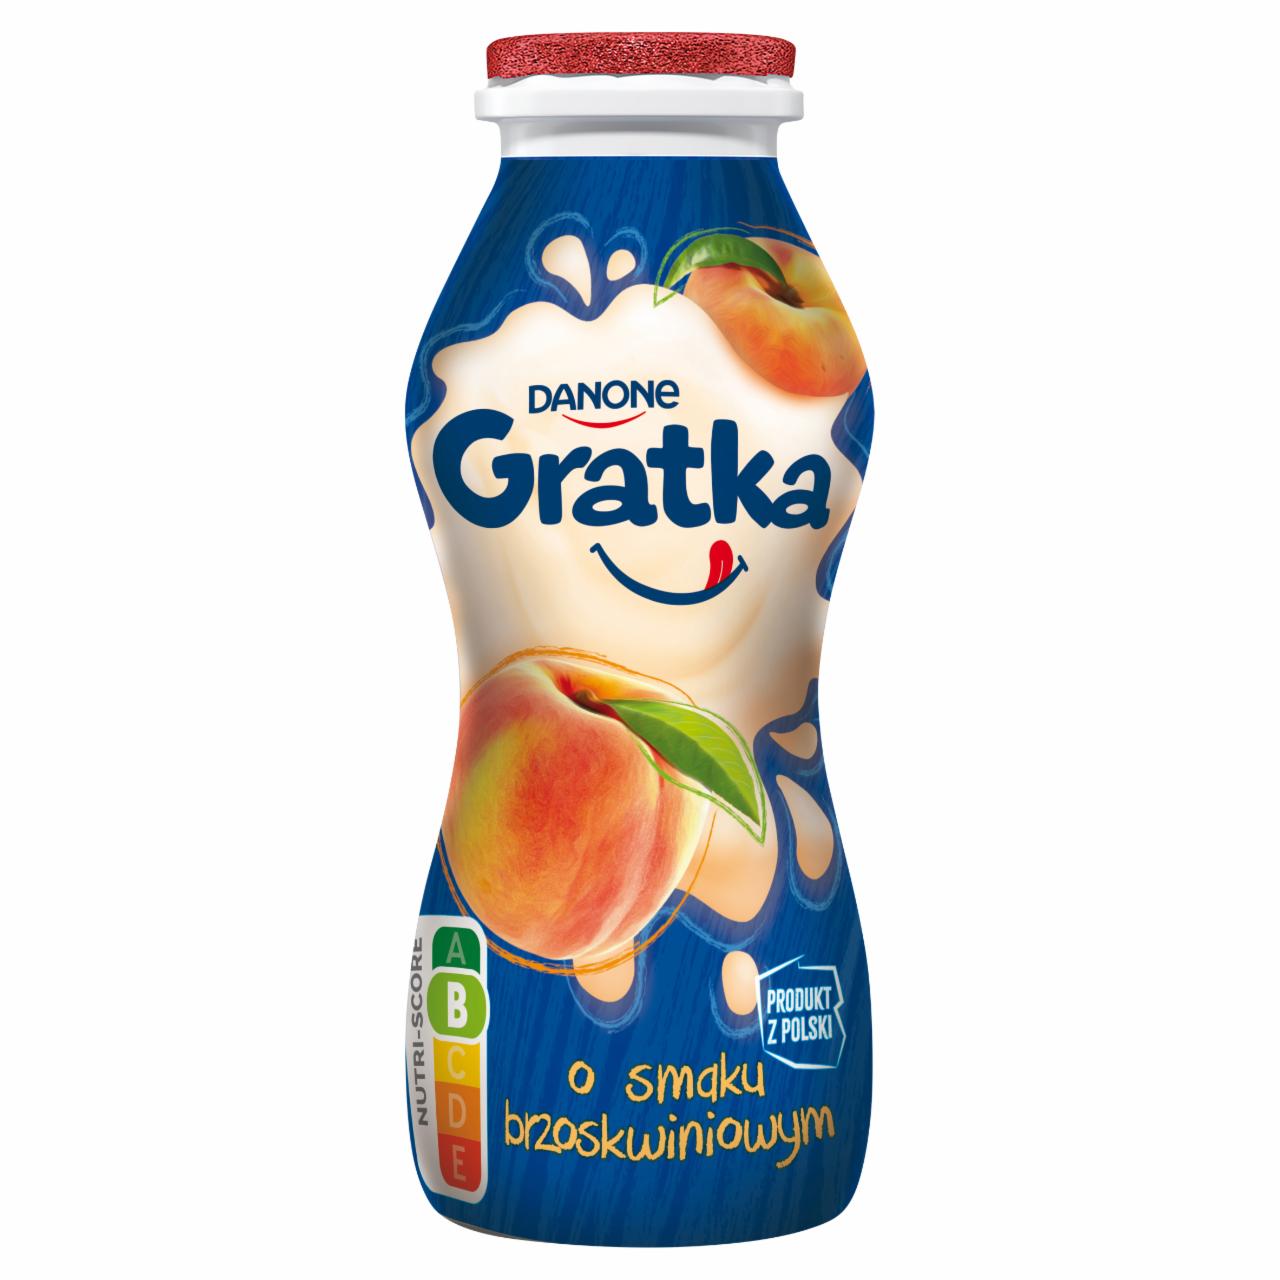 Zdjęcia - Danone Gratka Produkt mleczny o smaku brzoskwiniowym 170 g